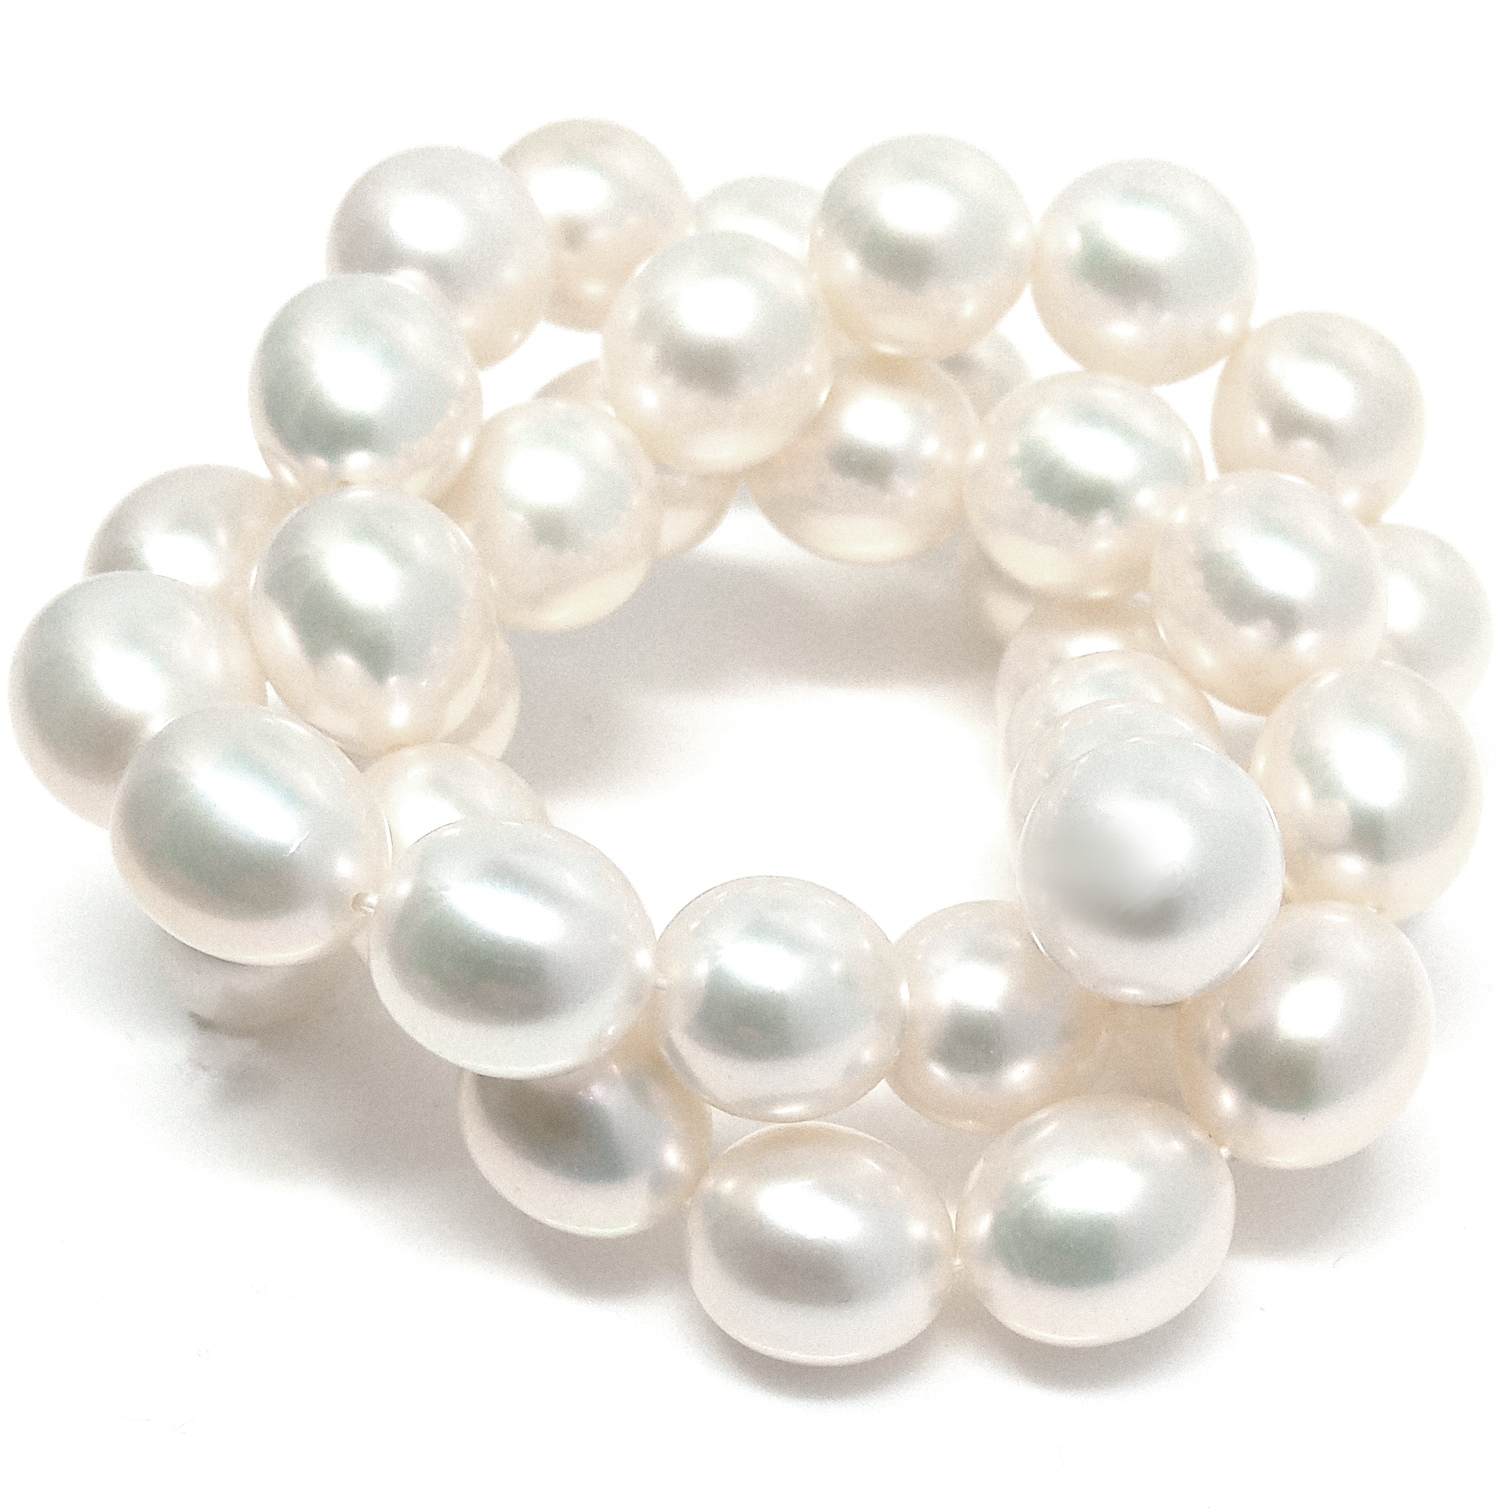 White 9.5-10mm AAA Elliptical Pearls